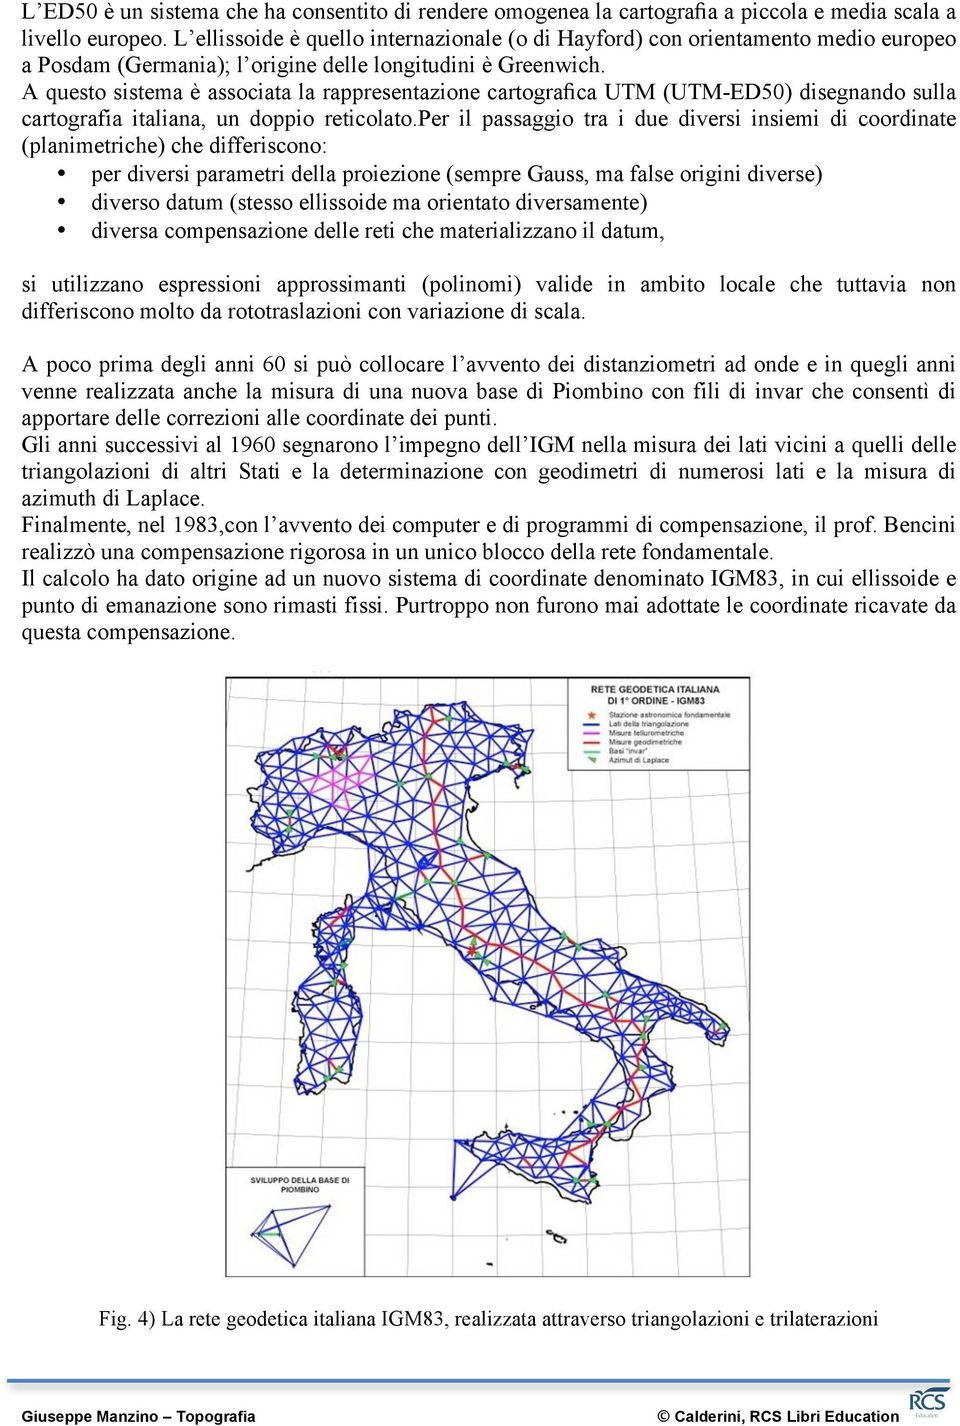 A questo sistema è associata la rappresentazione cartografica UTM (UTM-ED50) disegnando sulla cartografia italiana, un doppio reticolato.